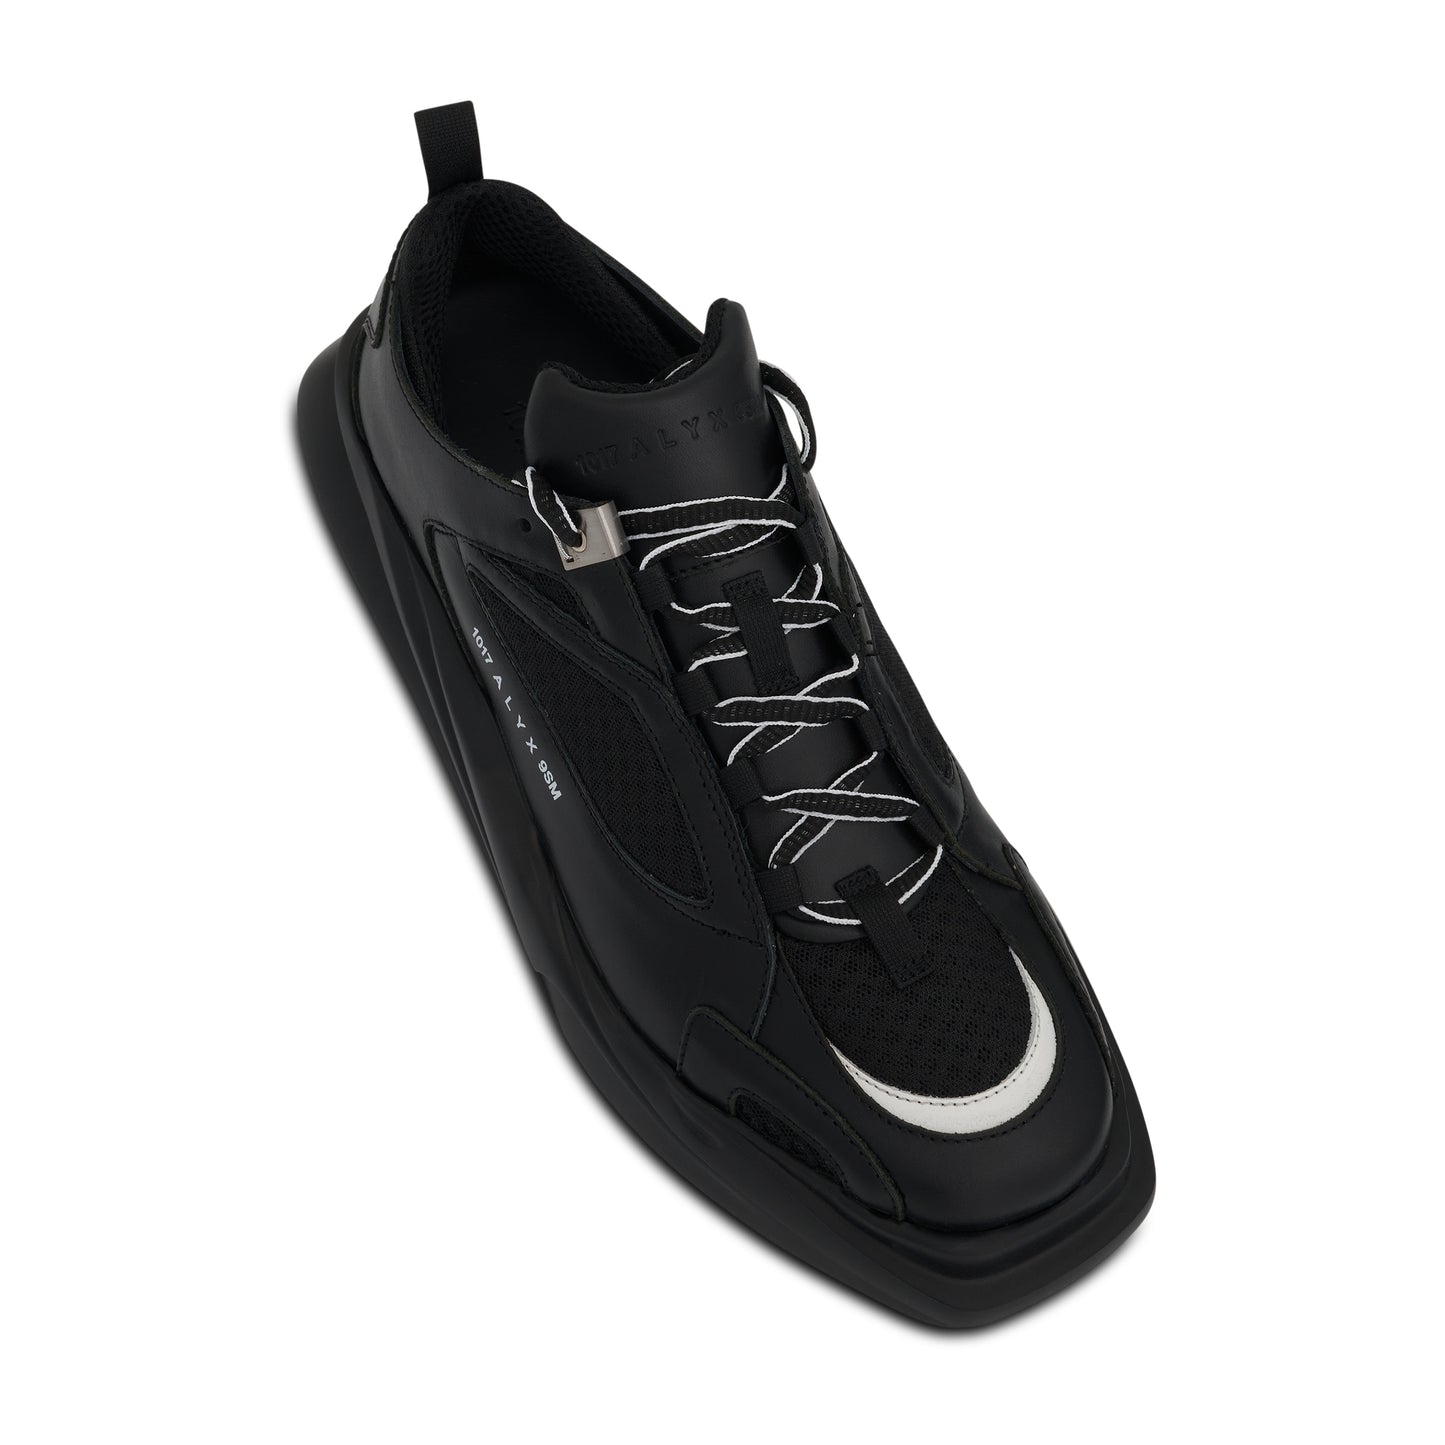 Mixed Mono Hiking Sneaker in Black/White